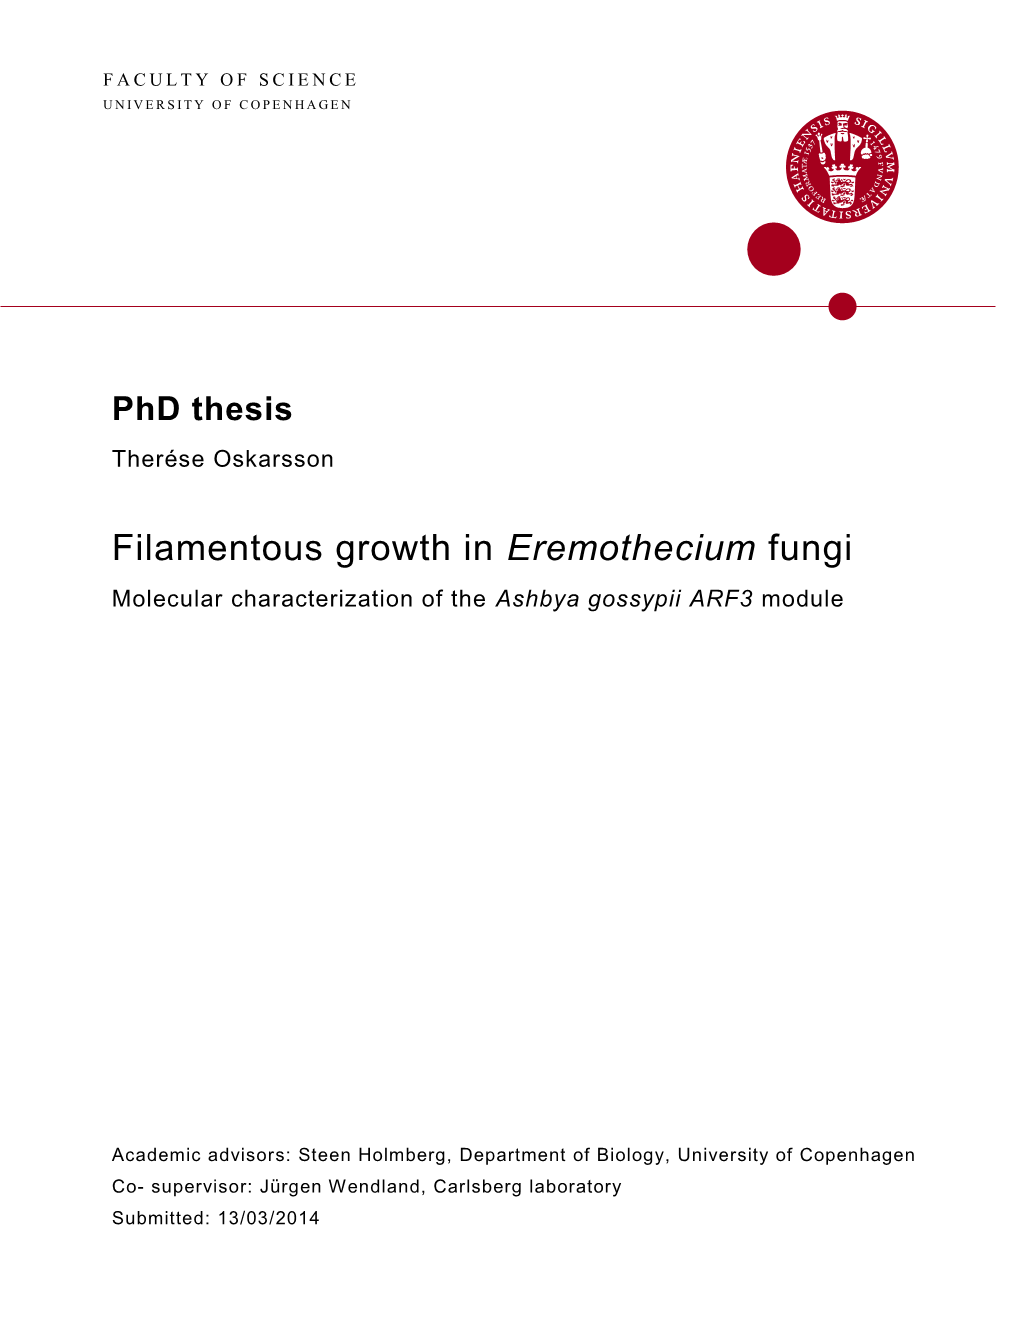 Filamentous Growth in Eremothecium Fungi